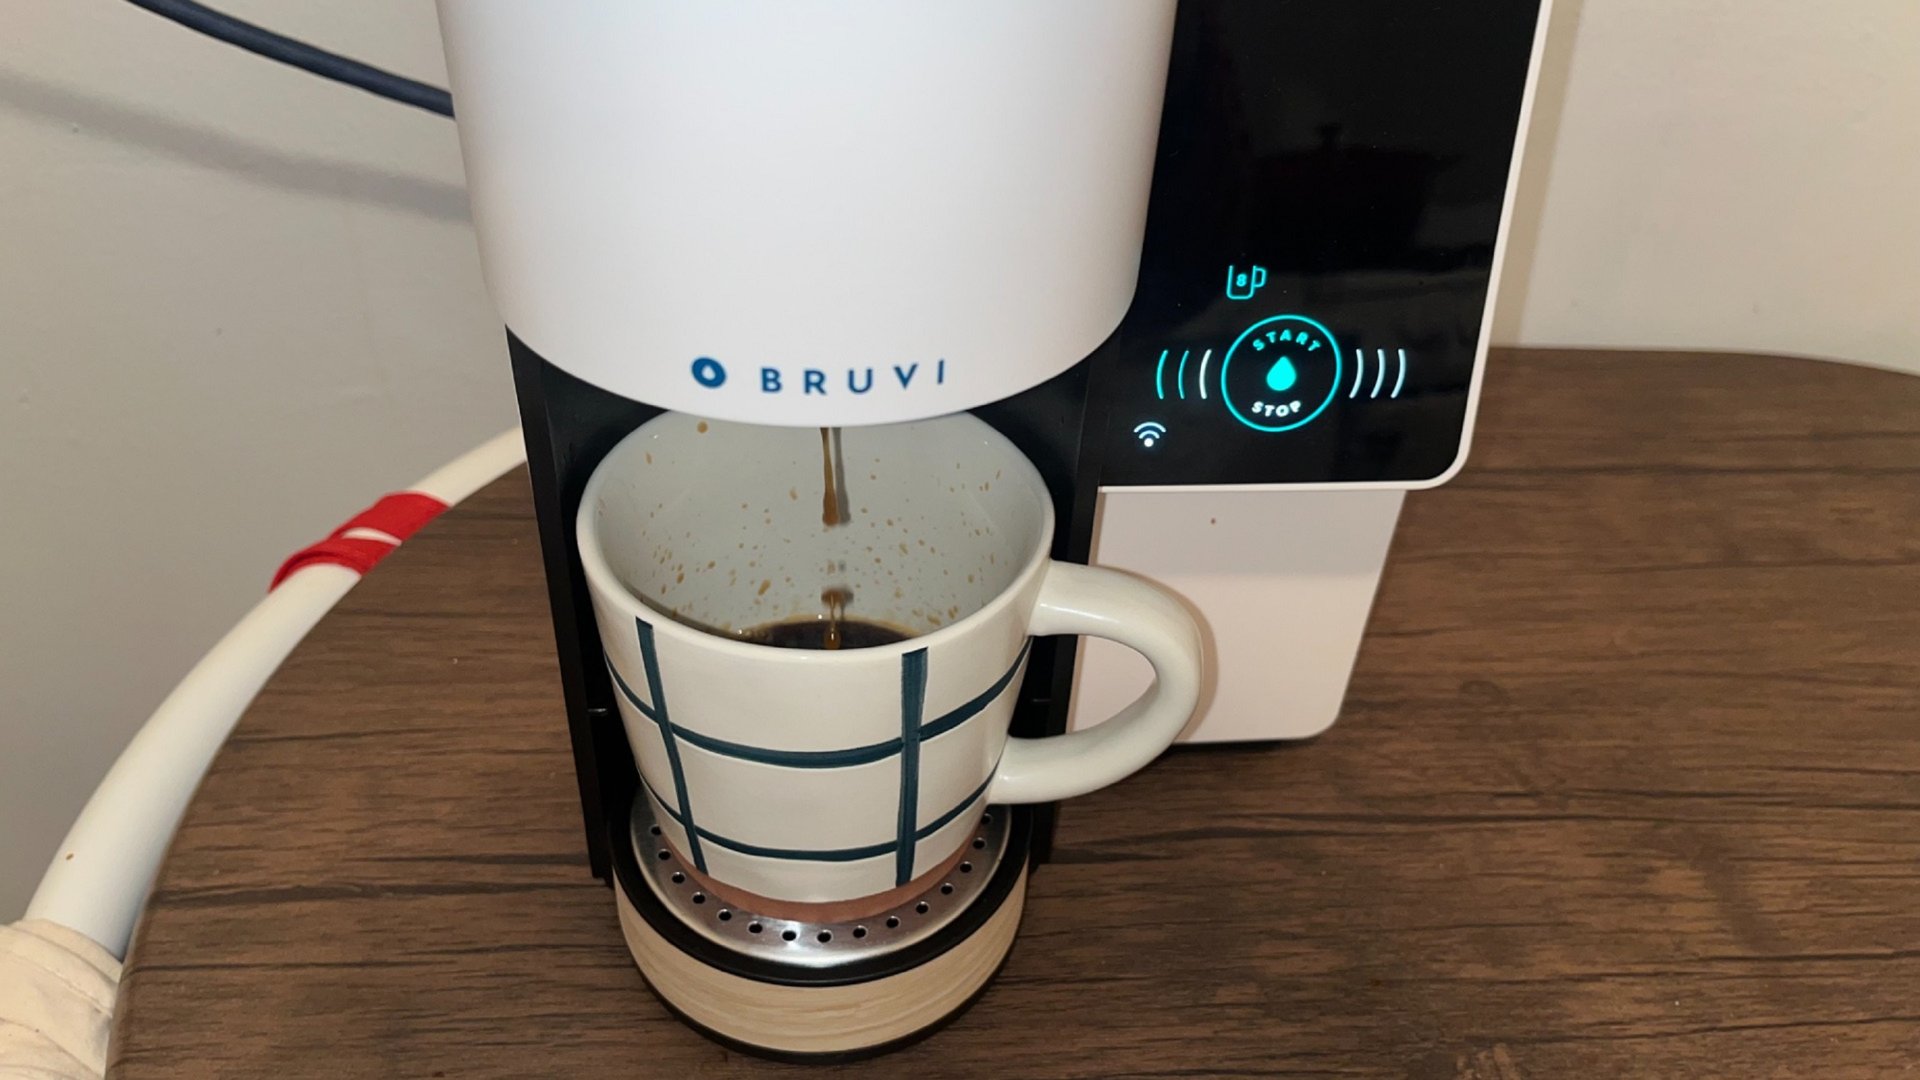 налить в чашку с помощью кофеварки bruvi